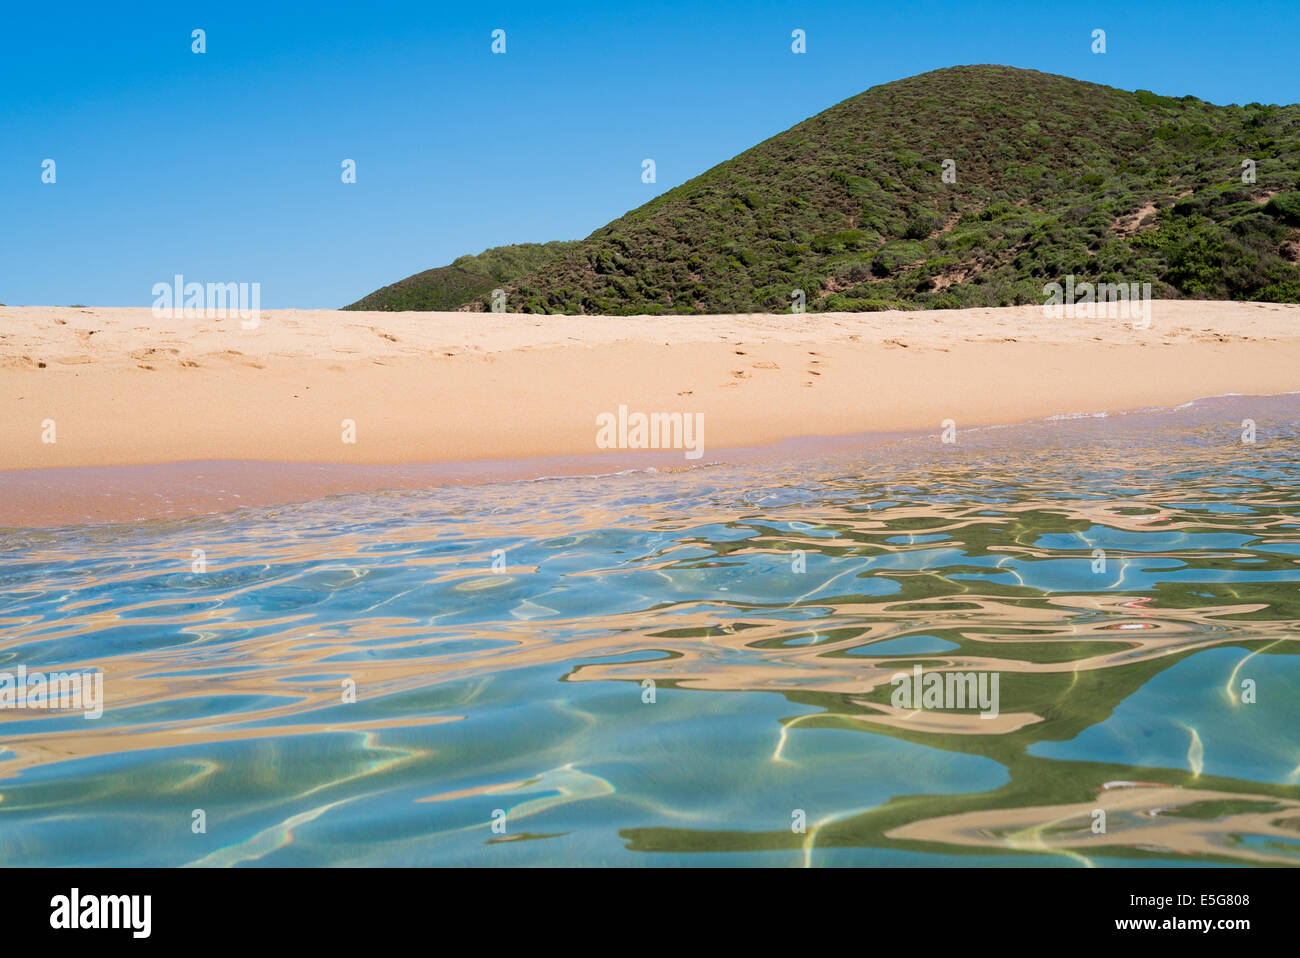 Sea and beach along green coast, west Sardinia, Italy Stock Photo